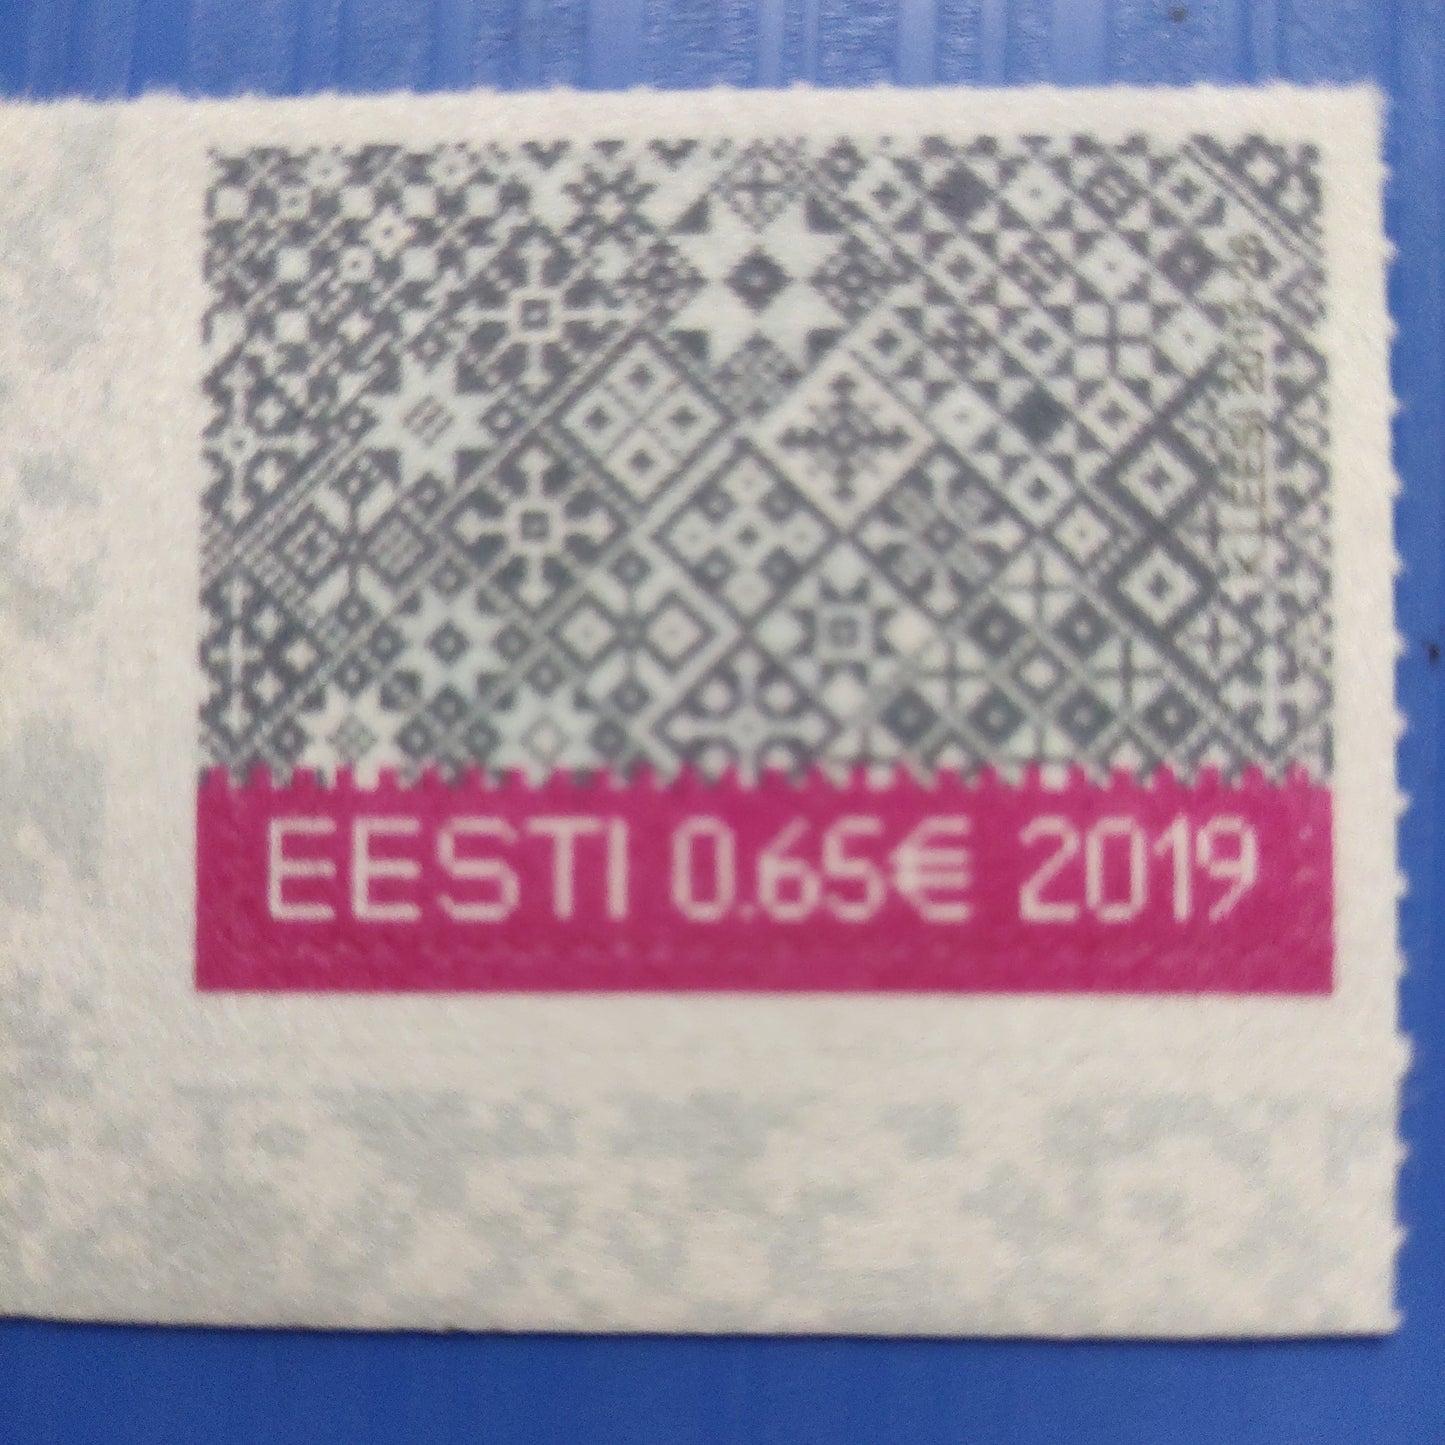 Estonia velvet stamp on Christmas 2019.